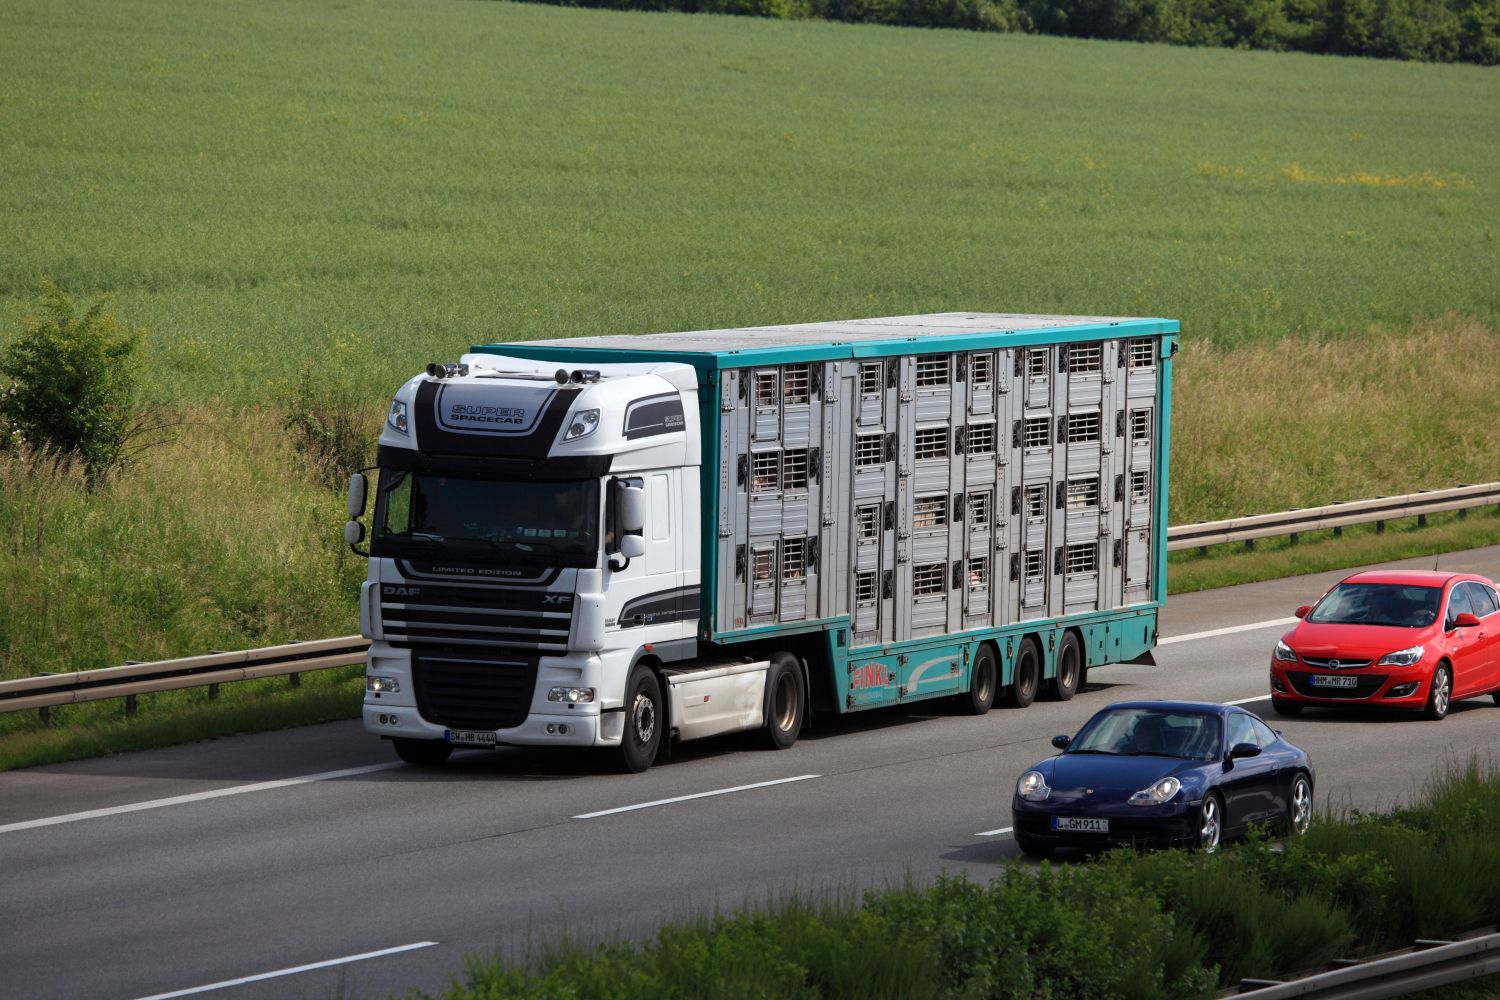 Tiertransport LKW auf einer Autobahn und zwei weitere PKW